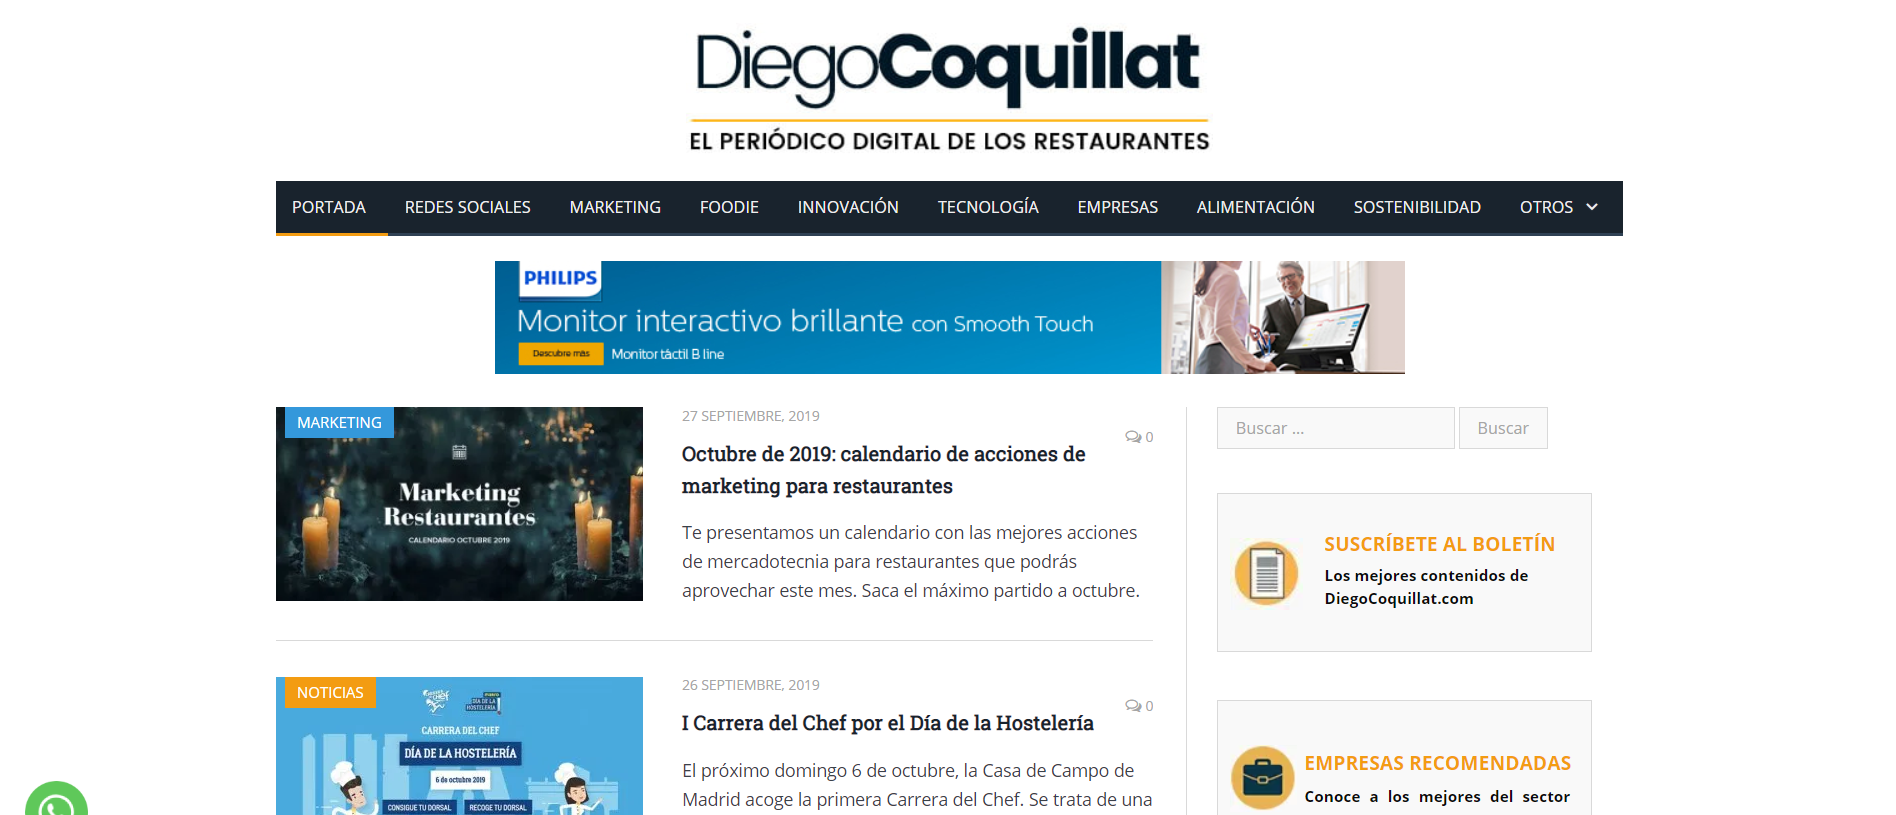 Los 6 mejores Blogs sobre hostelería y restauración. Diego Coquillat Blog portada